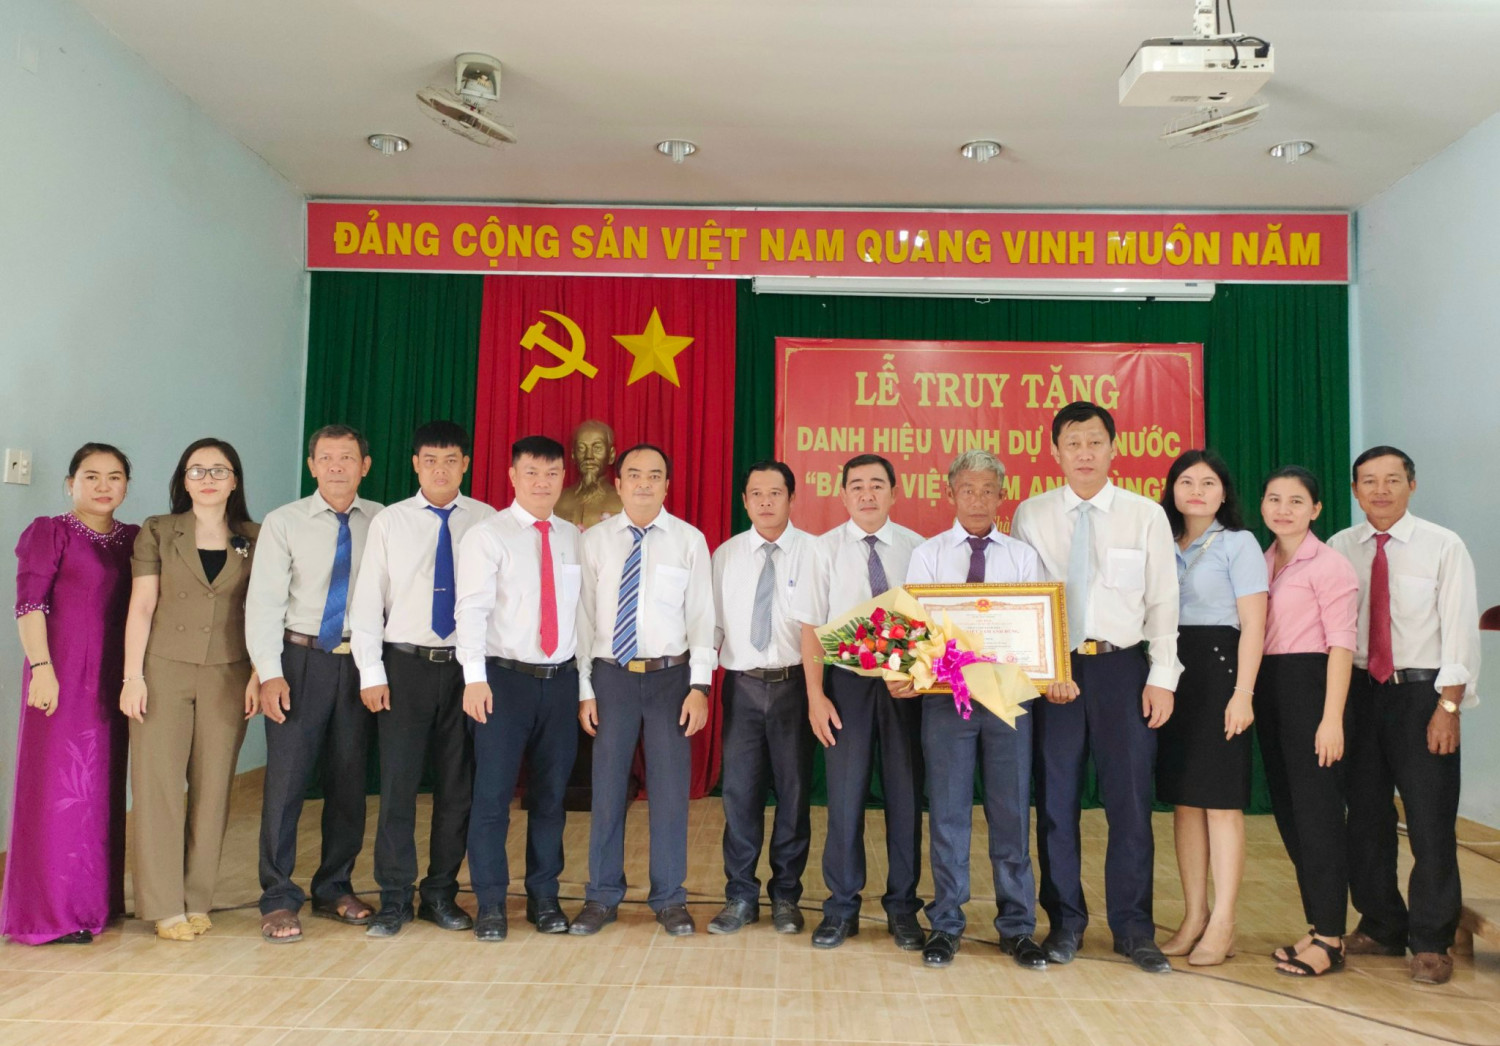 Châu Thành: Truy tặng Danh hiệu vinh dự Nhà nước Bà Mẹ Việt Nam Anh hùng